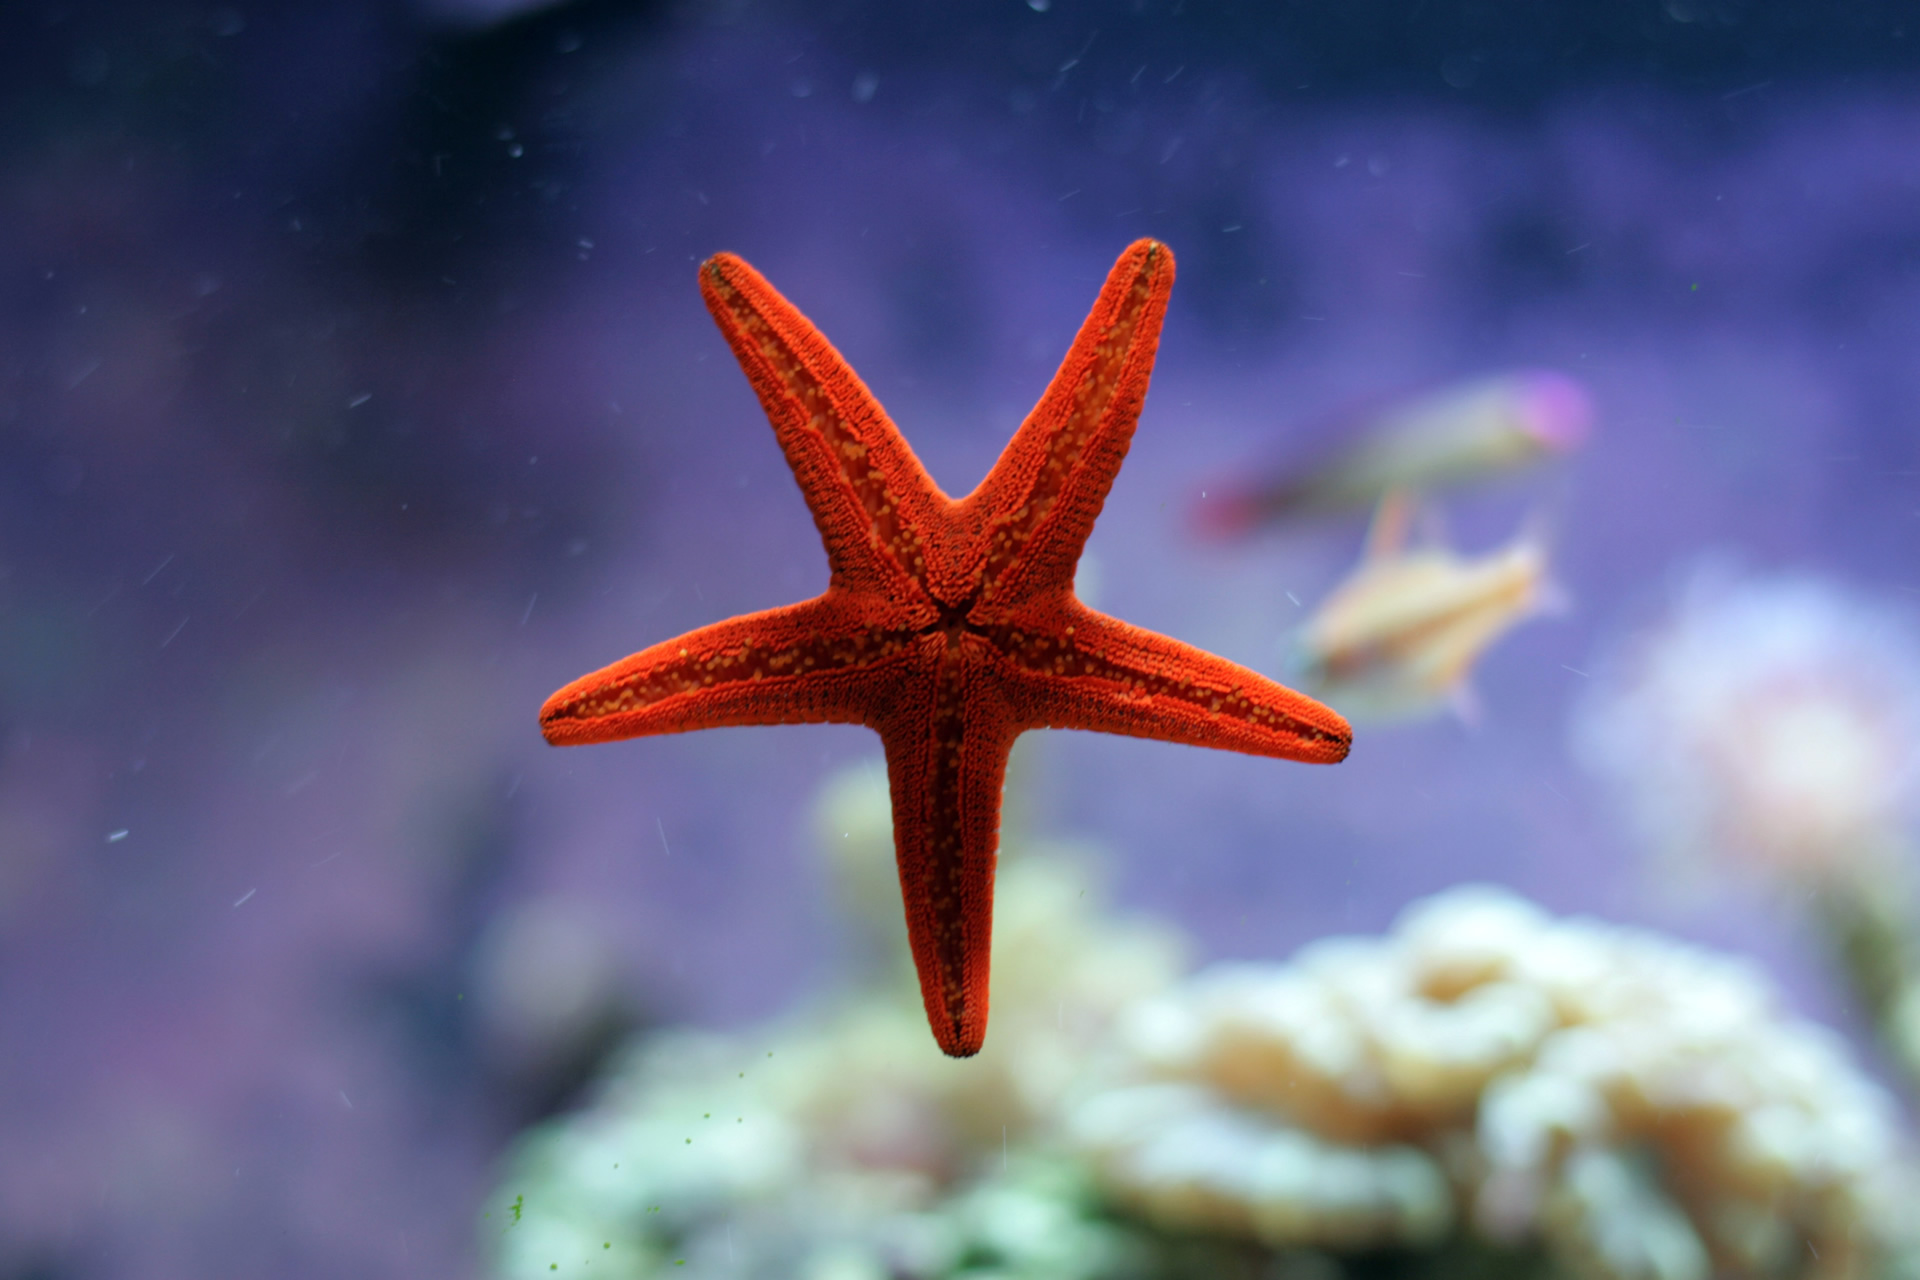 Tải + Download hình nền động vật Sao Biển – Starfish 4k Ultra full hd